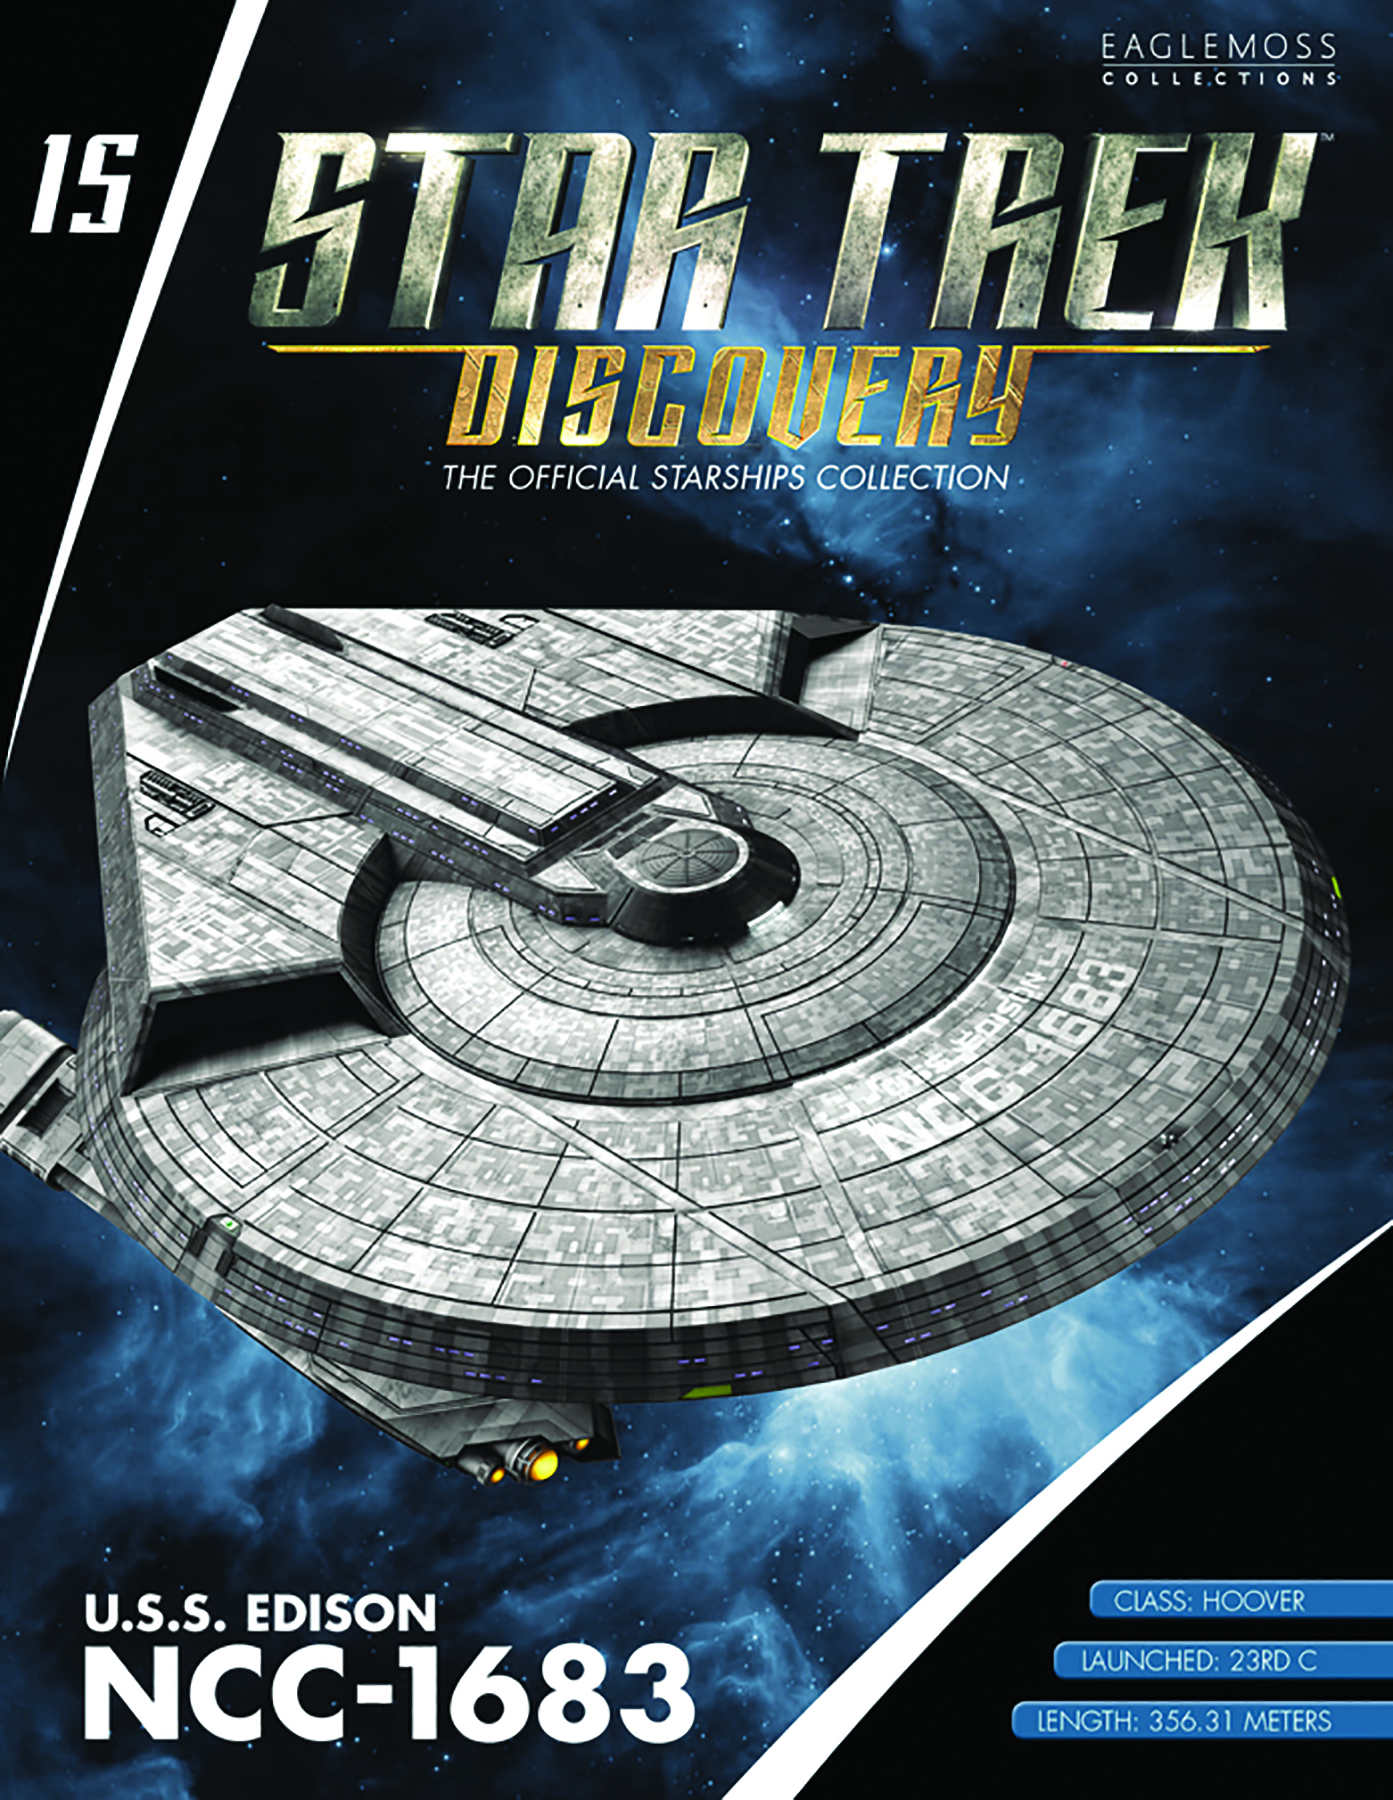 Eaglemoss Star Trek Starships Discovery Issue 15